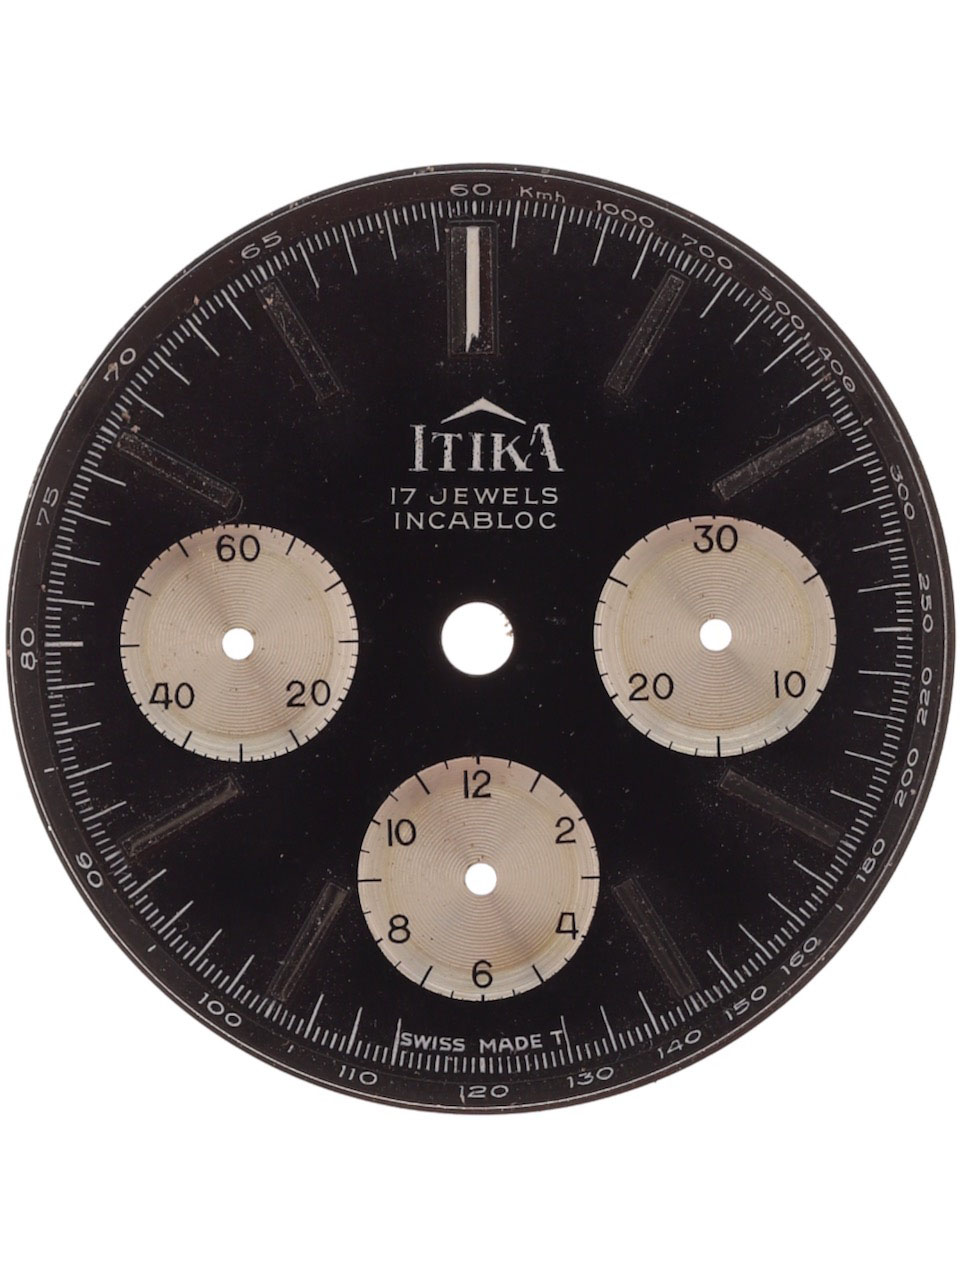 Itika Valjoux 72 Tachymeter 1960s